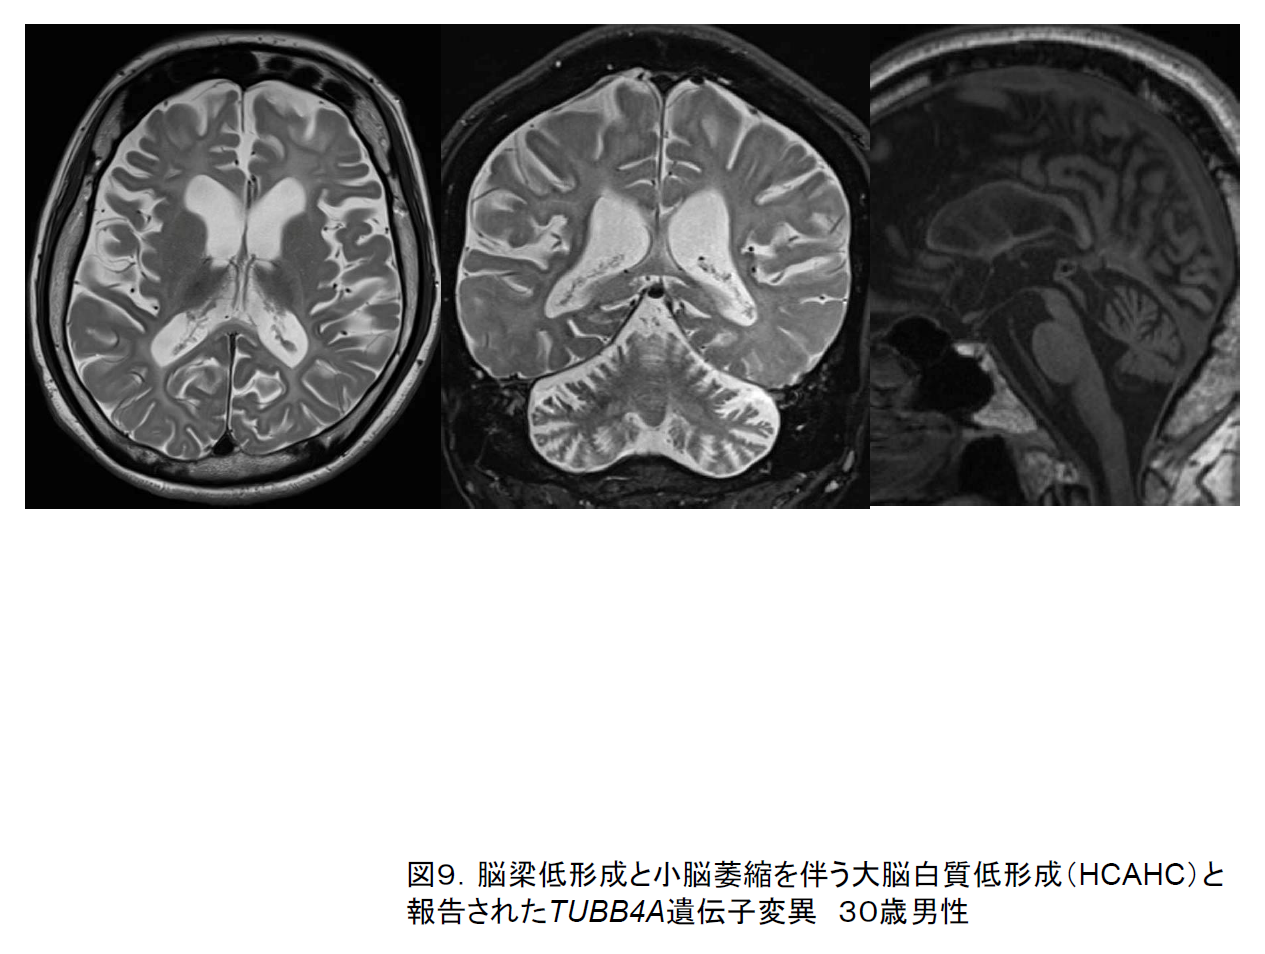 図9. TUBB4A遺伝子変異．３０歳男性．脳梁低形成と小脳萎縮を伴う大脳白質低形成（HCAHC）を認め尾状核頭や被殻はやや小振りなものの保たれている．